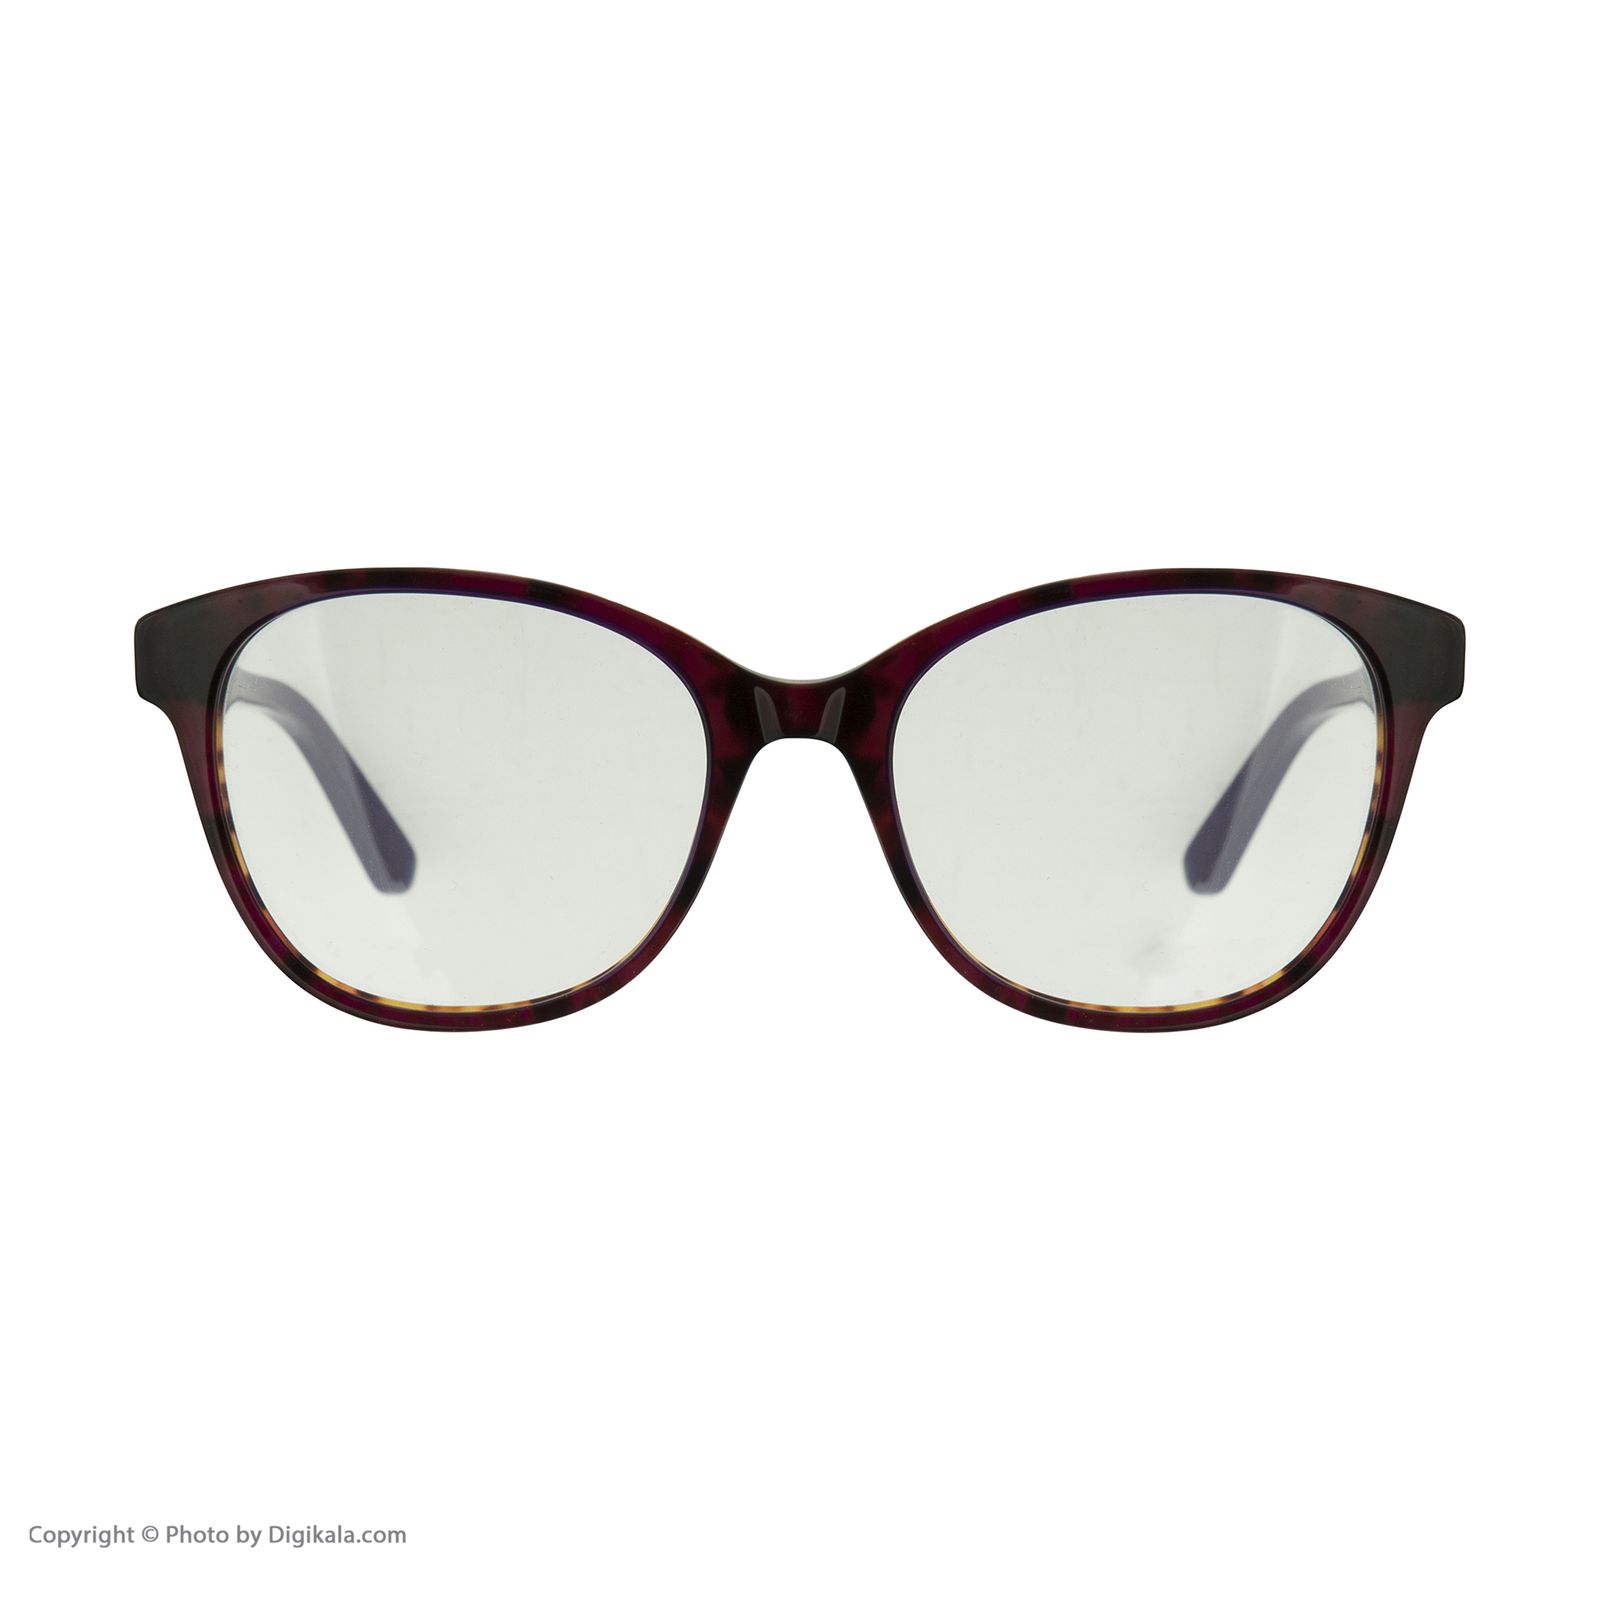 فریم عینک طبی زنانه کارل لاگرفلد مدل KL970V150 -  - 2